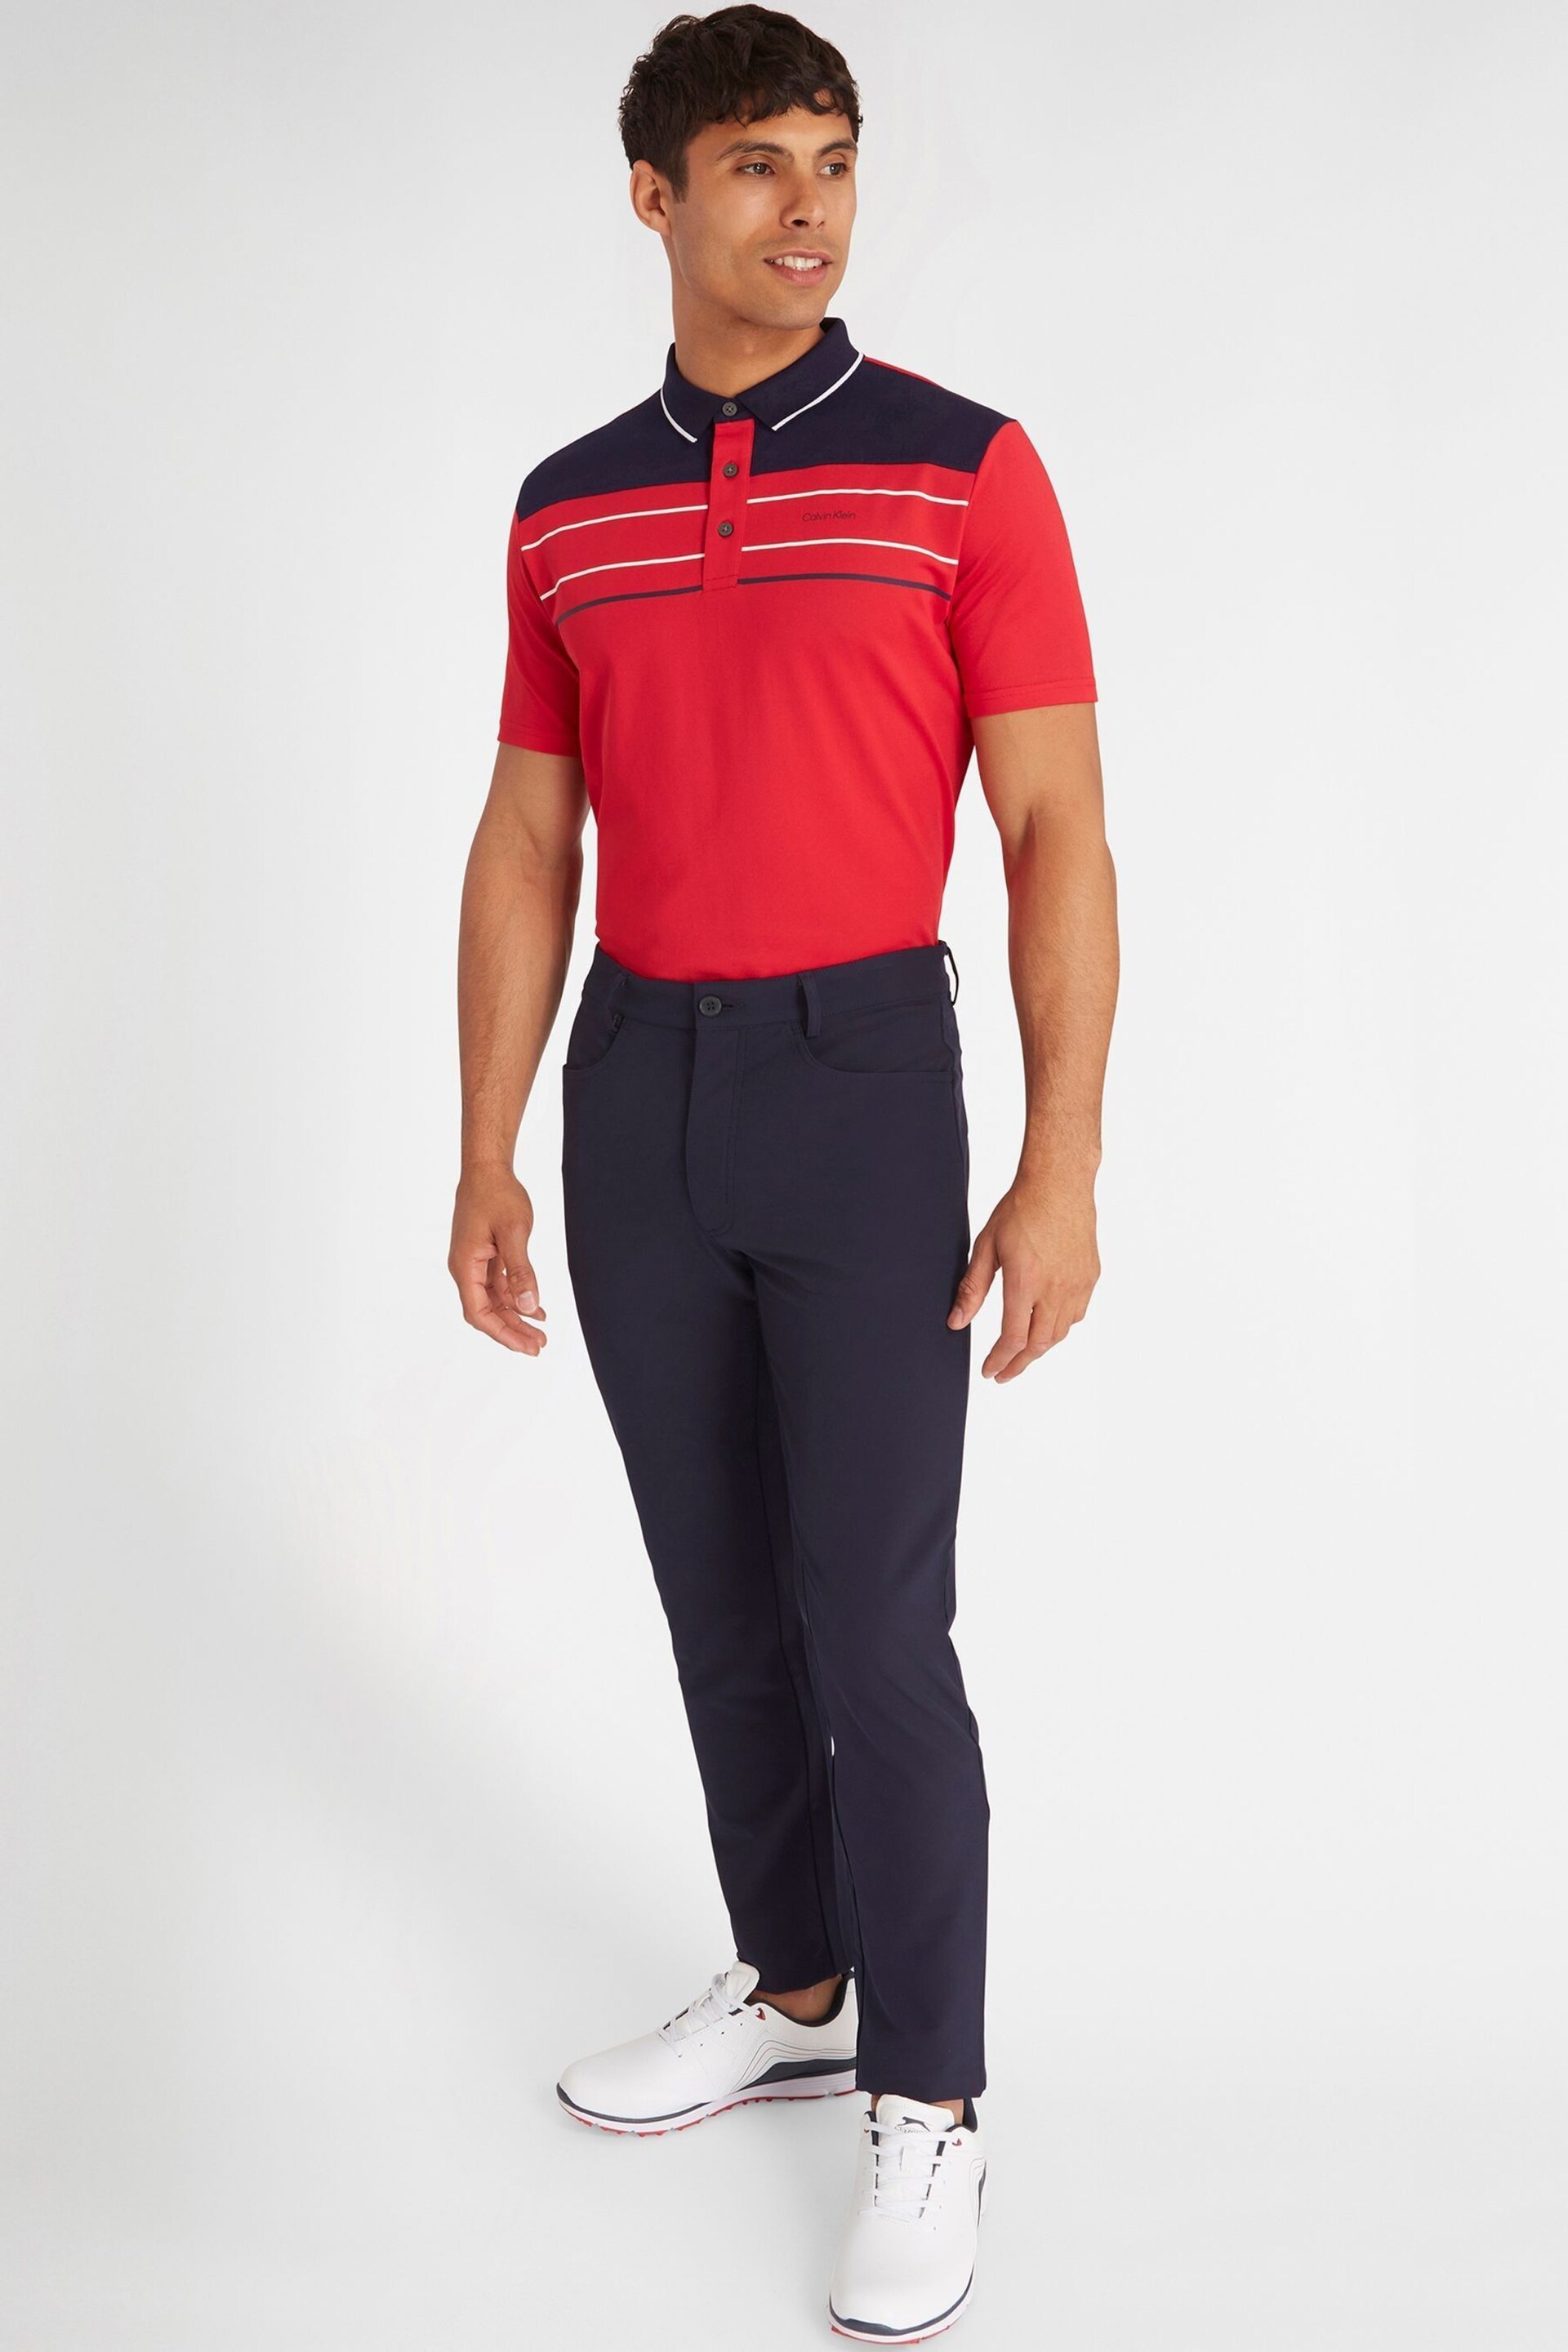 Calvin Klein Golf Red Eagle Polo Shirt - Image 3 of 8